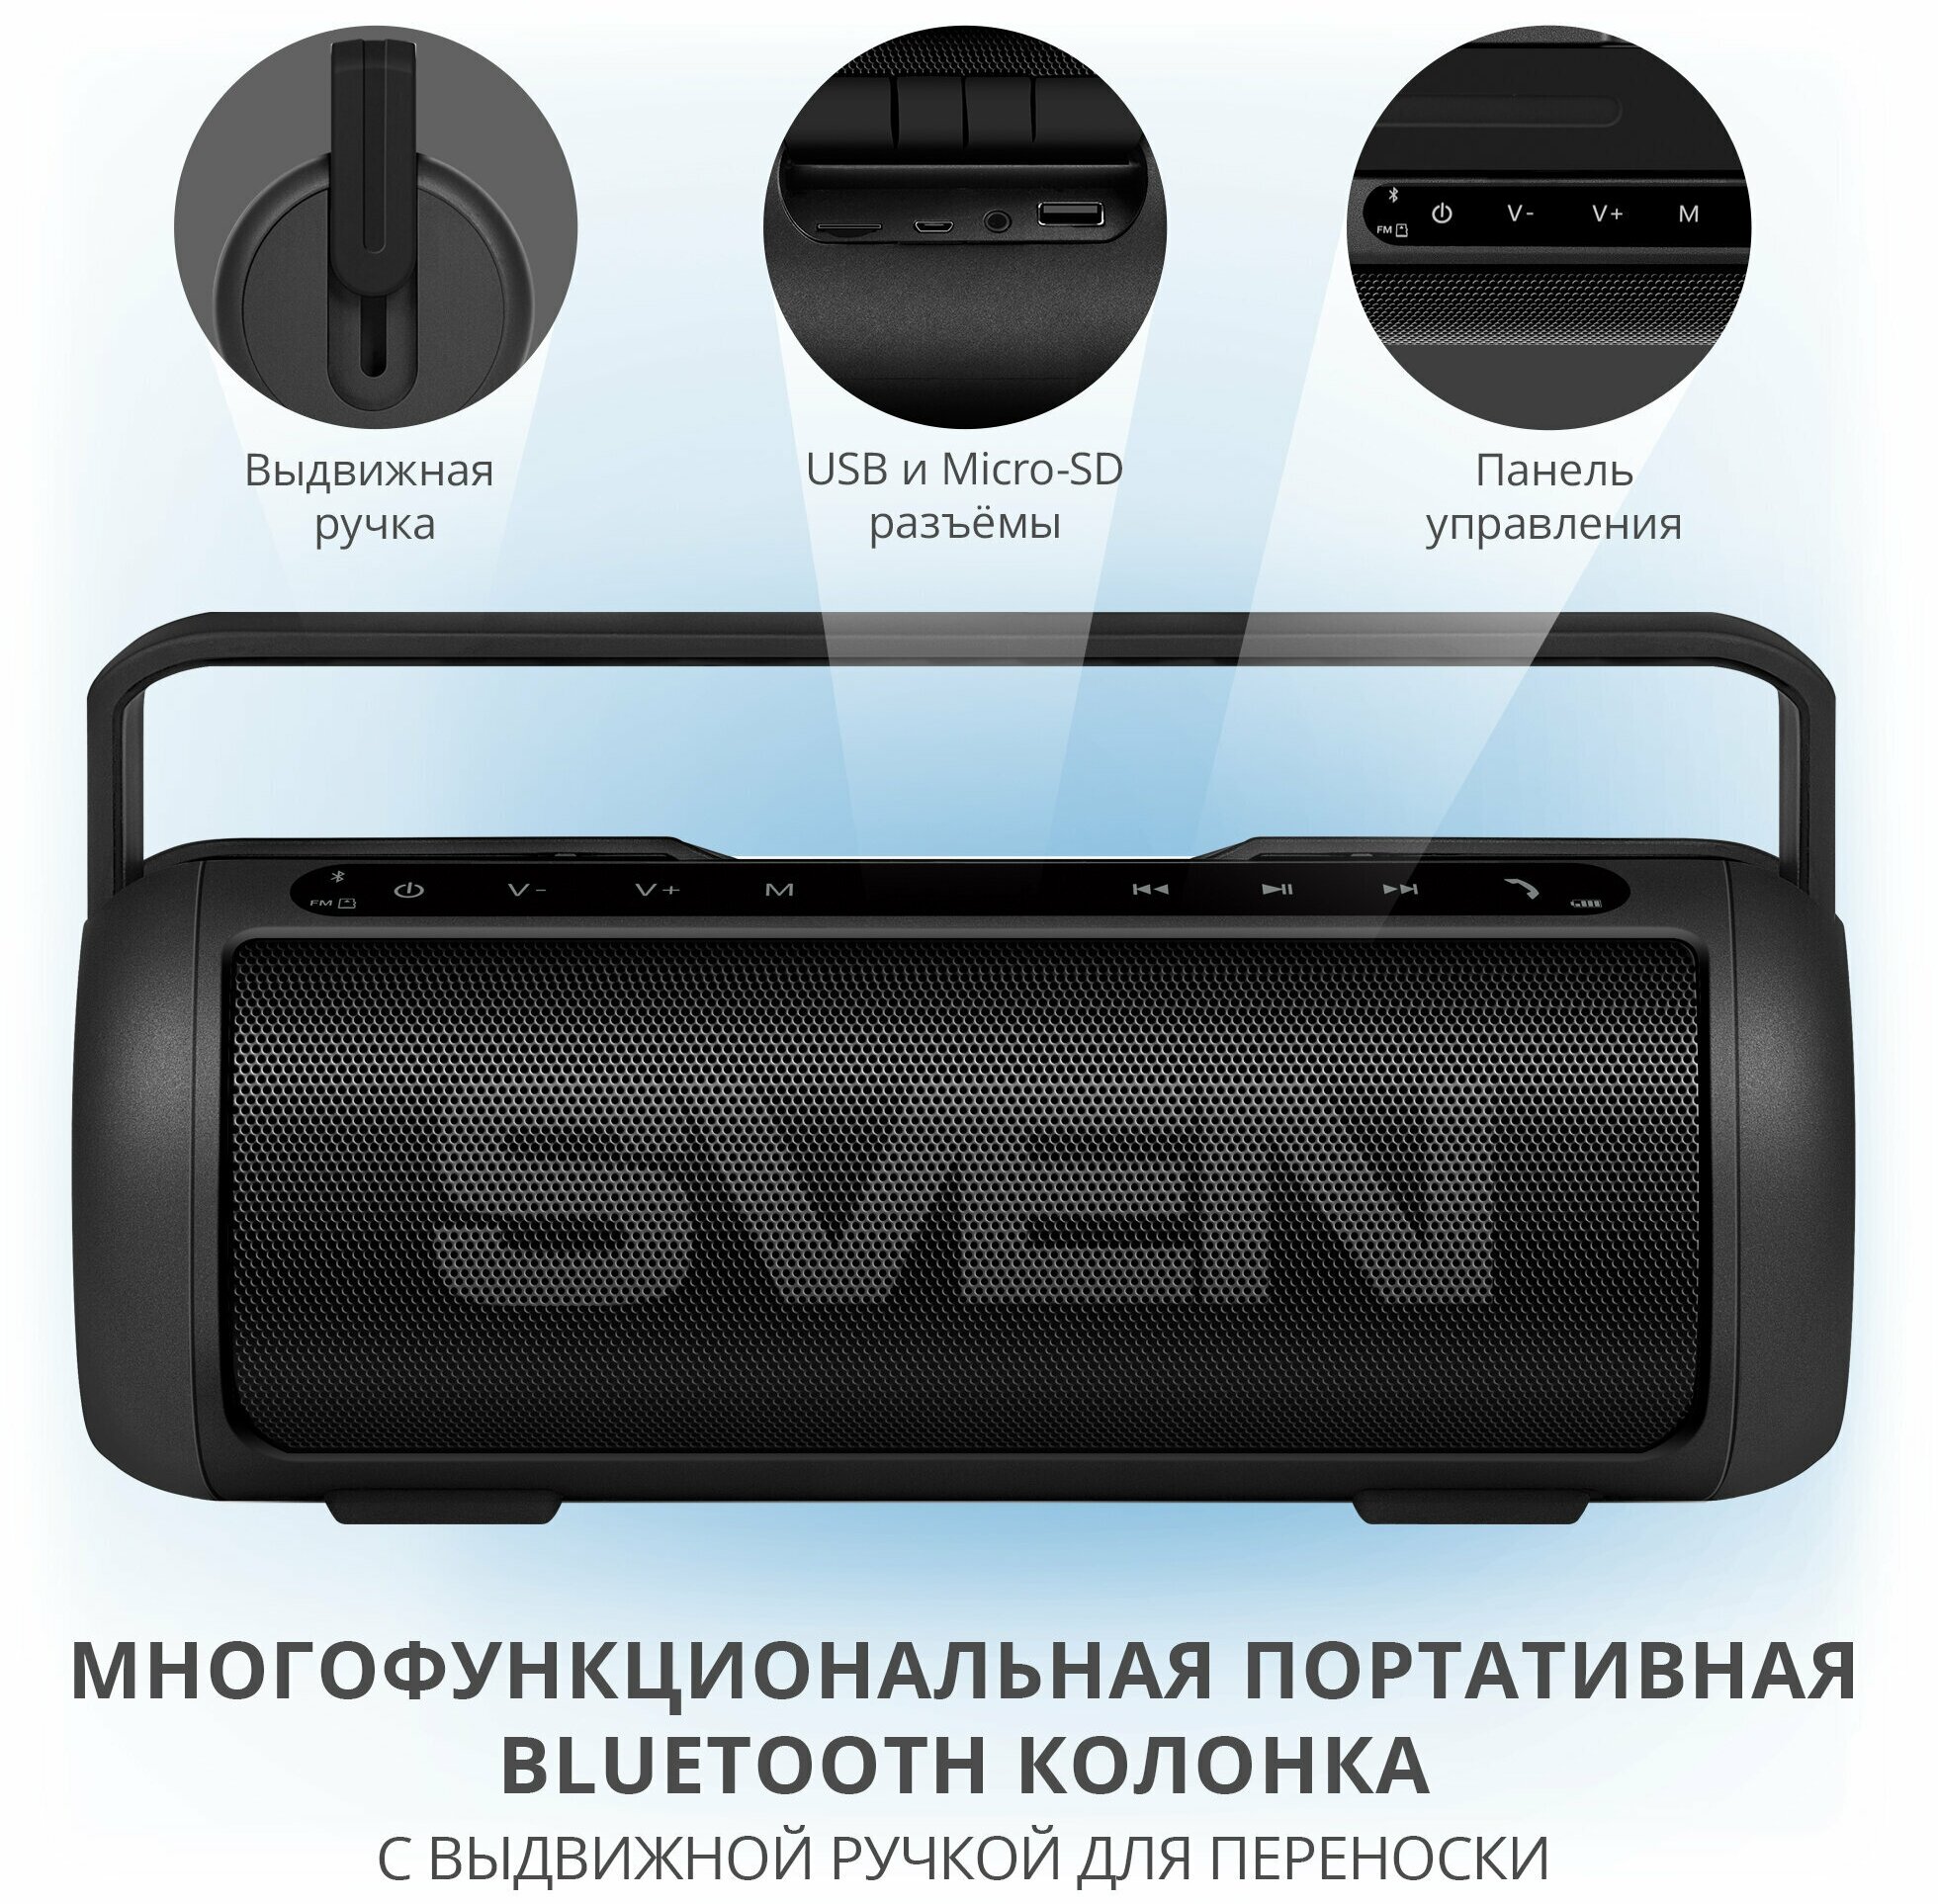 Портативная акустика SVEN PS-250BL 10 Вт